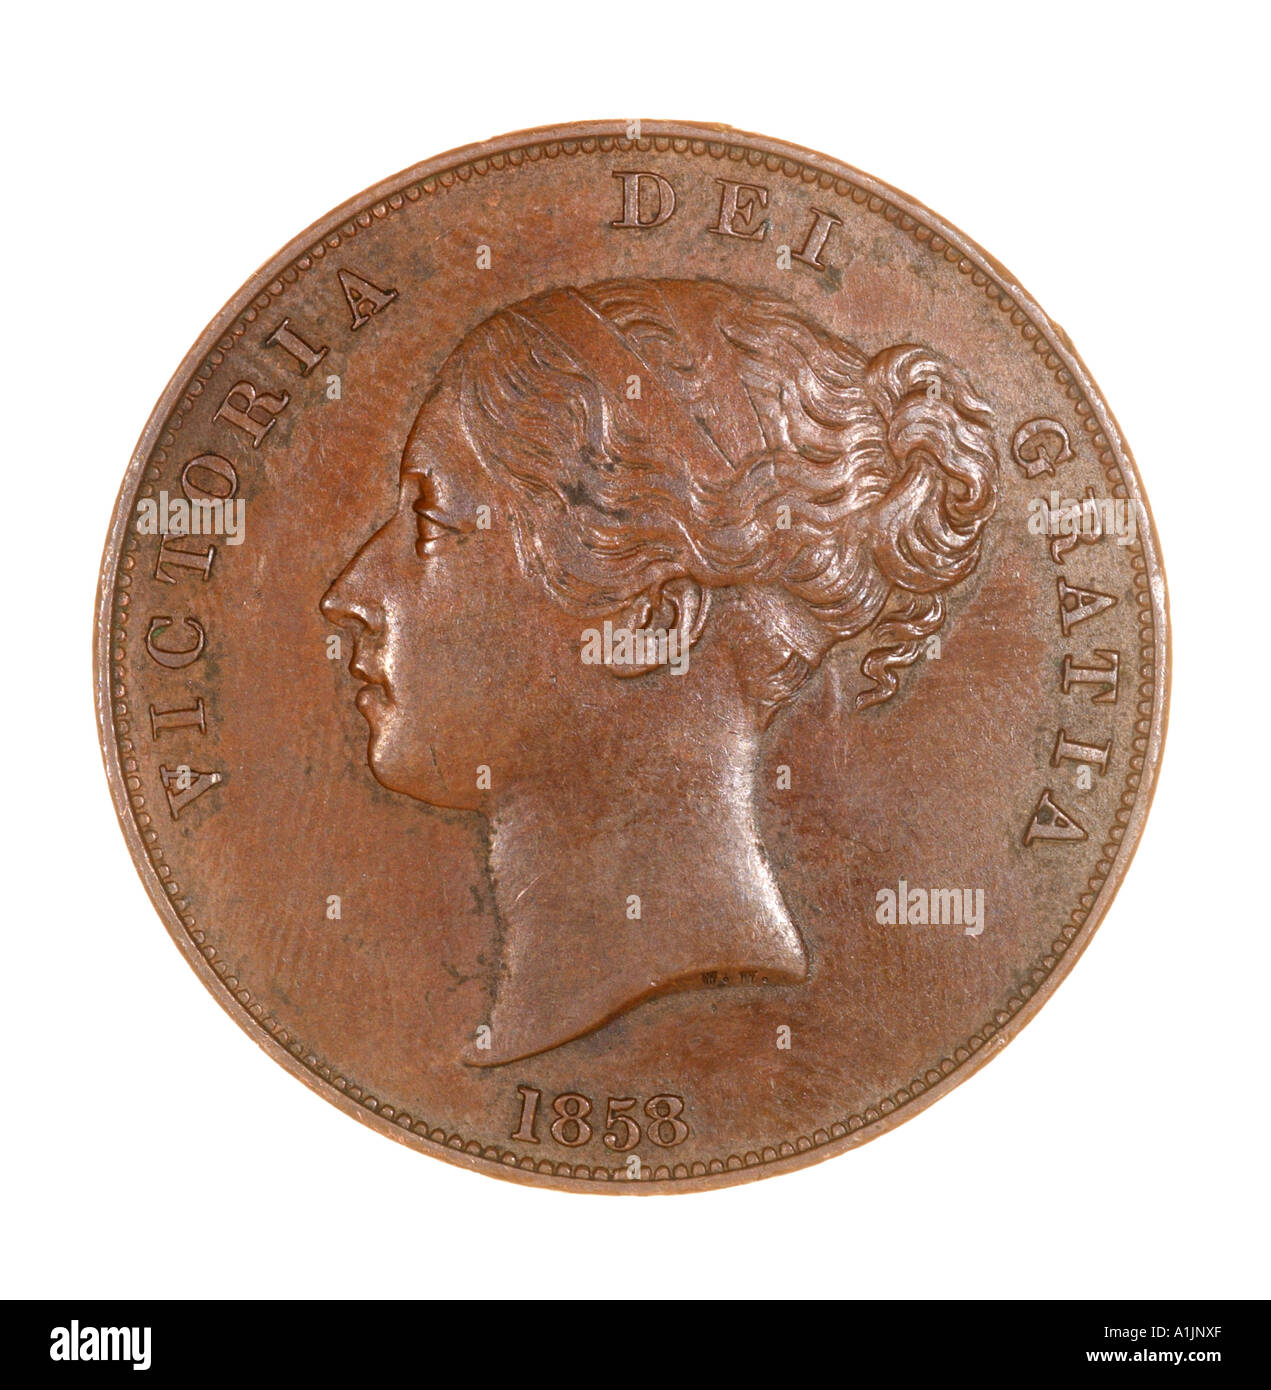 einen Penny Victoria Victorian Queen Kaiserreich Witwe königlichen Bronze junge Brötchen 1858 Britanniar dei Gratia Fid Def Reg 240 Stockfoto